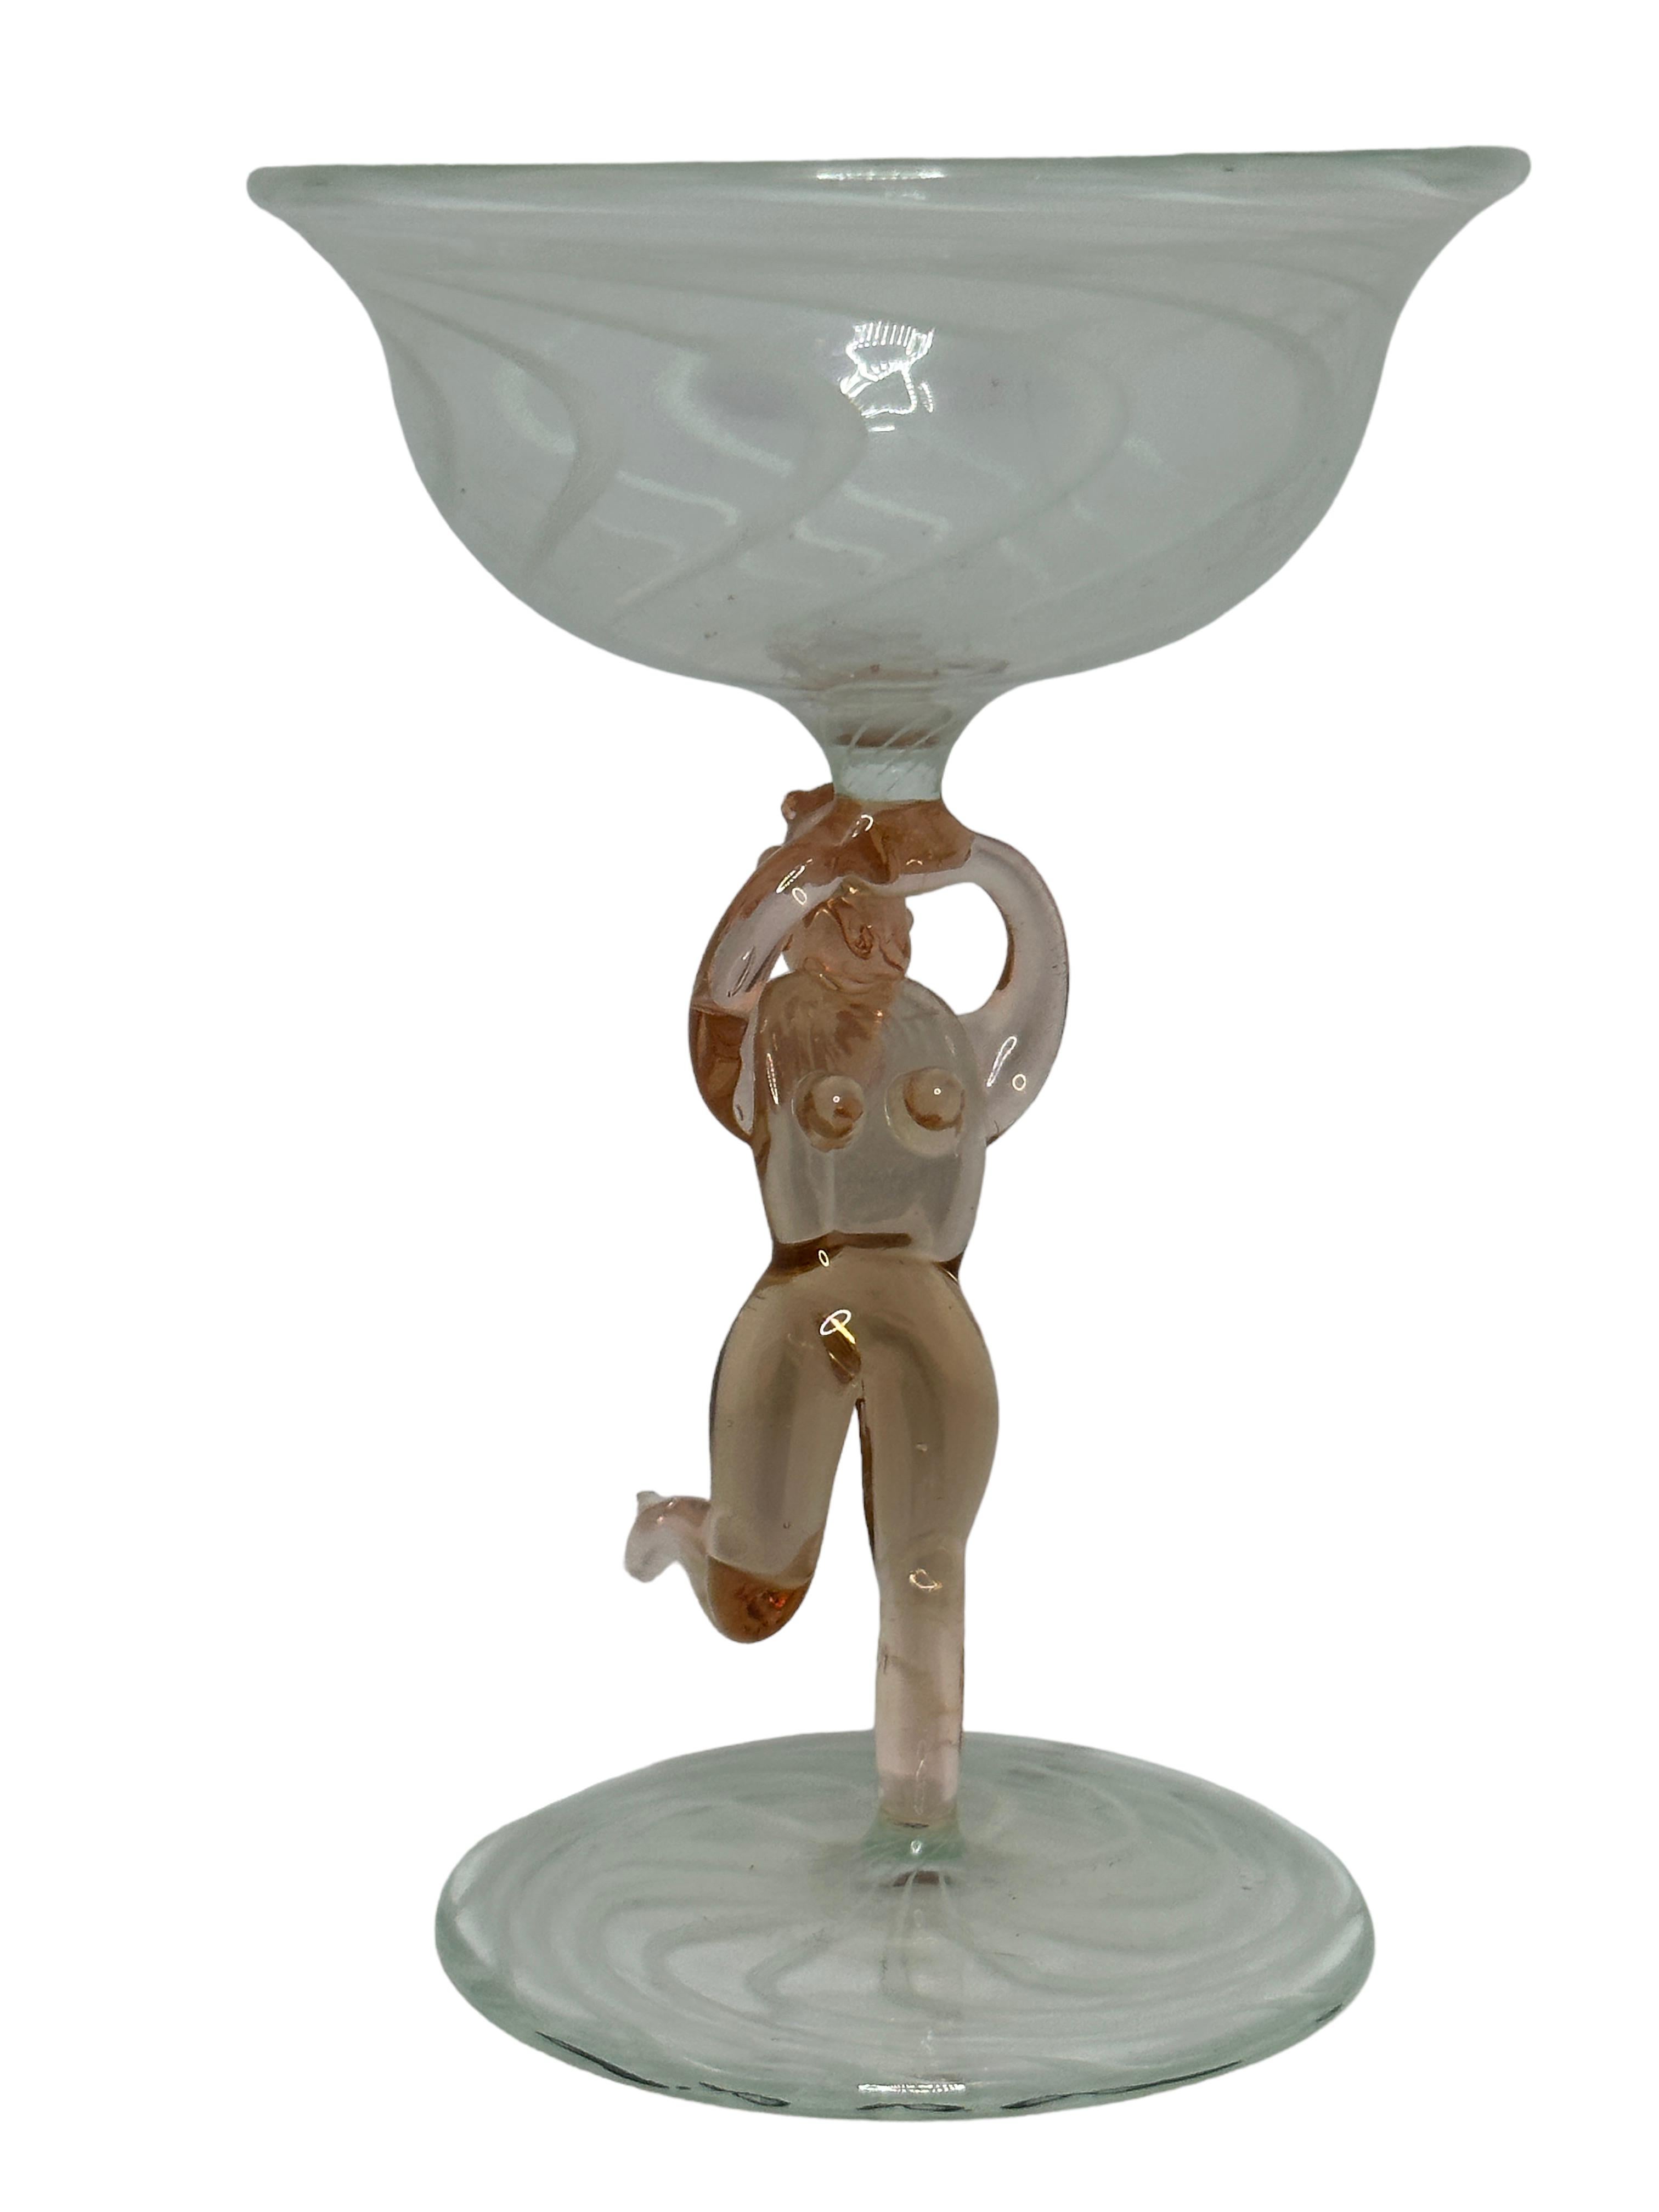 Dies ist ein wunderschönes, einfaches Vintage-Cocktailglas mit Stiel aus Österreich. Es hat einen nackten Frauenschaft und ist im Bimini-Stil gehalten. Das klare Glas hat ein wunderschönes Wirbelmuster, der Stiel zeigt eine nackte Dame in rosa